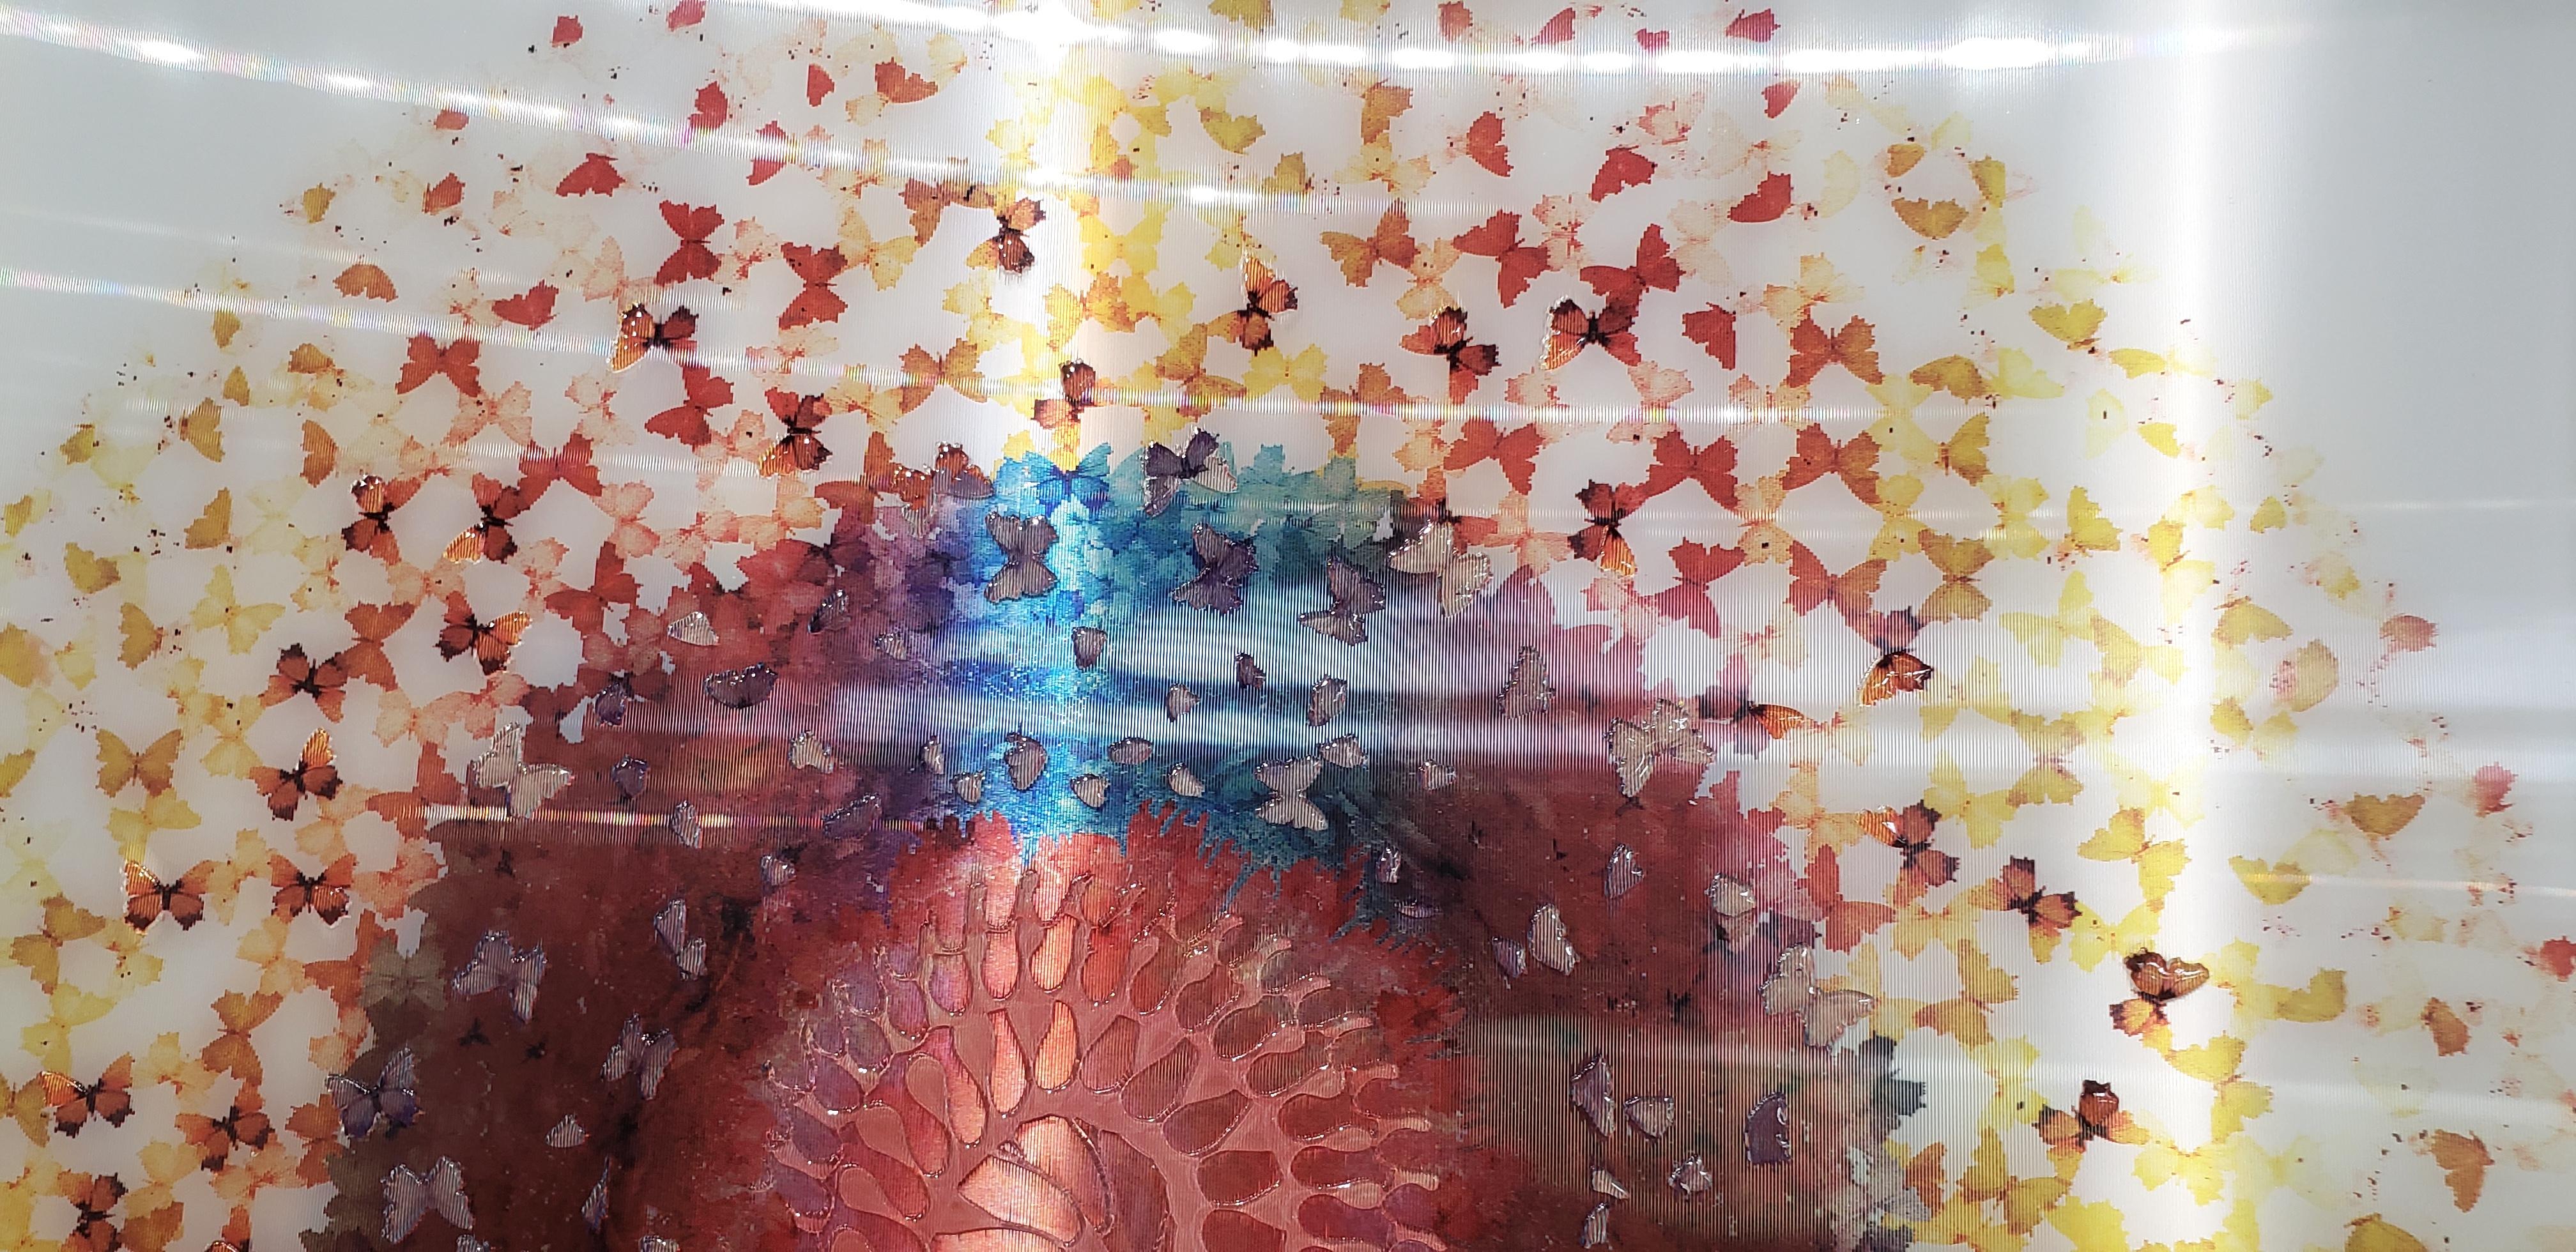 Lenticulaire - Œuvre d'art holographique encadrée.
Les sculptures de rêve de l'artiste italienne Annalù Boretto enchantent les spectateurs avec des éclaboussures d'eau hyperréalistes et des couleurs brillantes. Née à Venise en 1976, l'artiste a